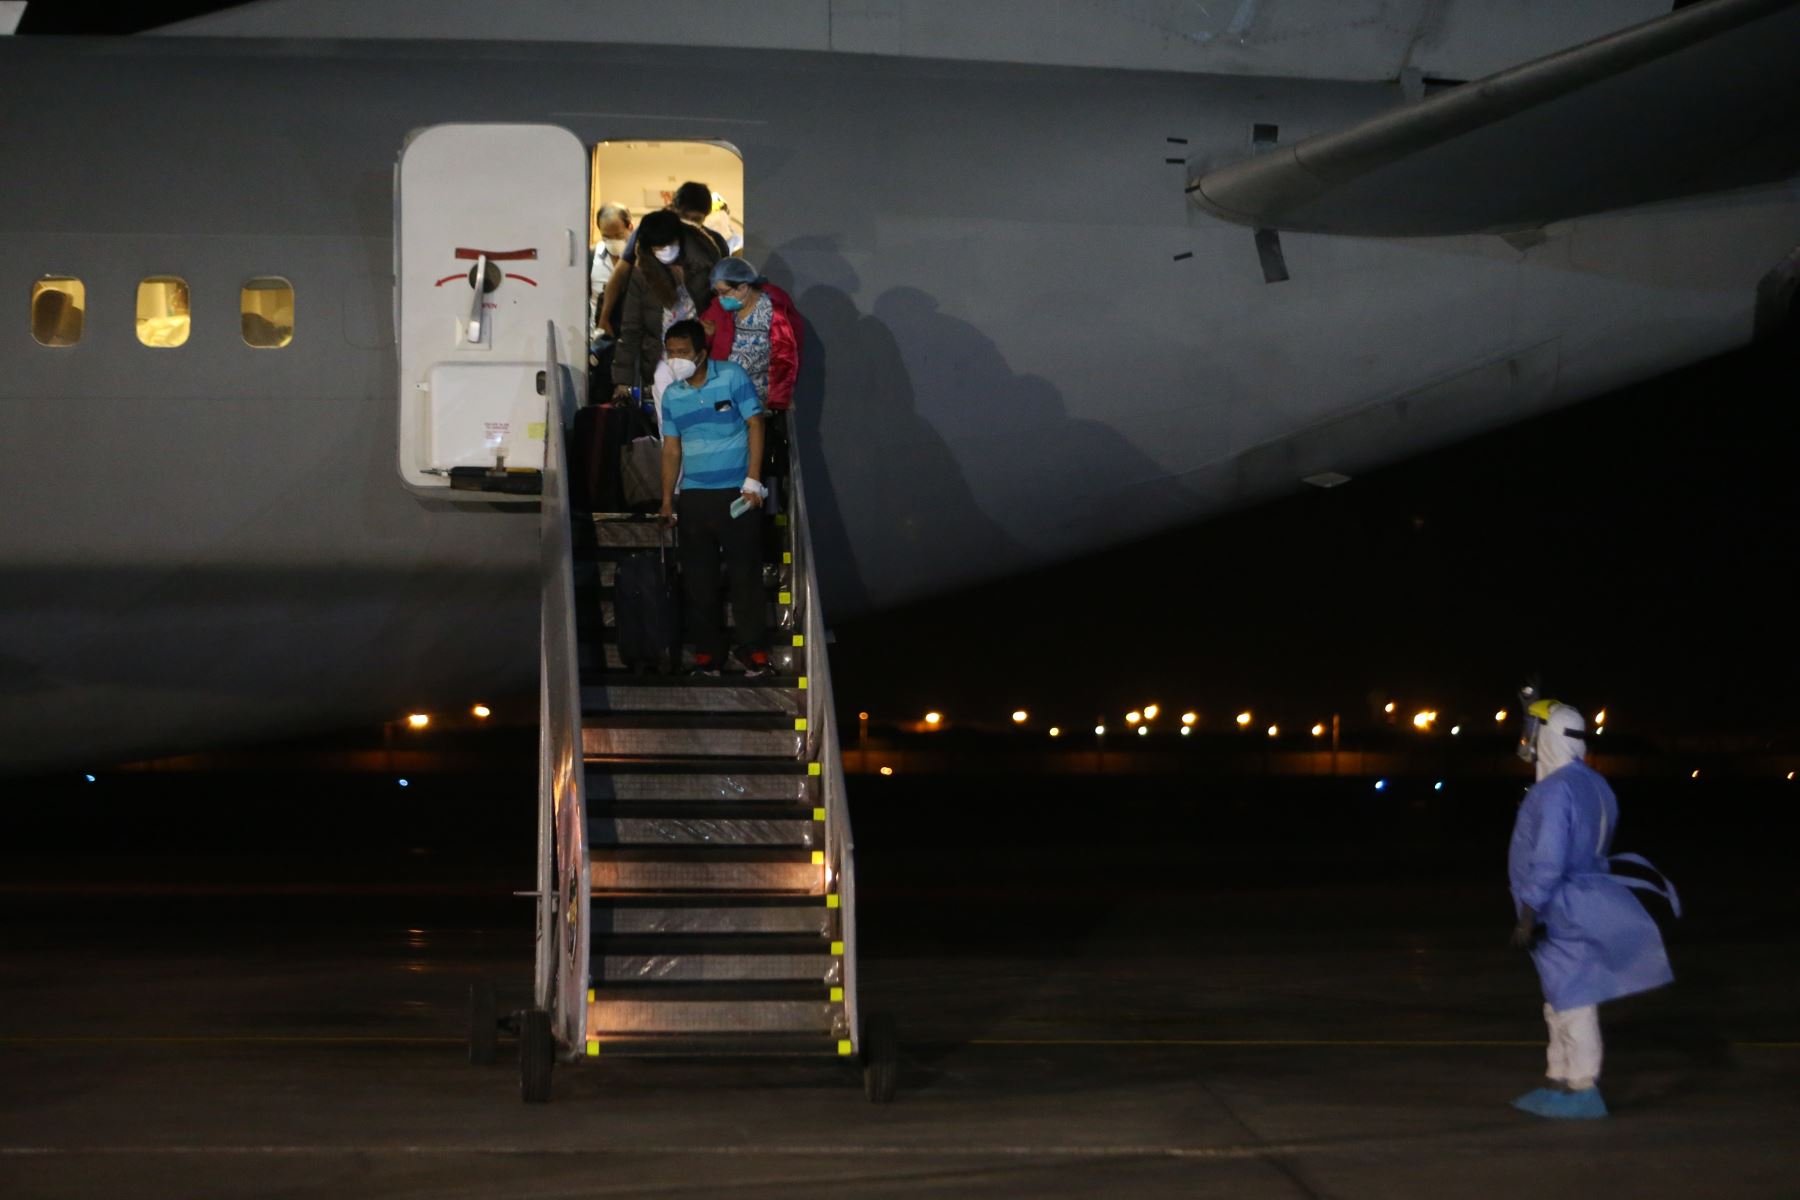 Las Fuerzas Armadas, por encargo del Jefe del Estado, Martín Vizcarra, trasladan a Lima en el avión presidencial, al personal médico desplazado en la ciudad de Iquitos que se encuentra afectado por el Covid-19. Foto: ANDINA/Jhonel Rodríguez Robles